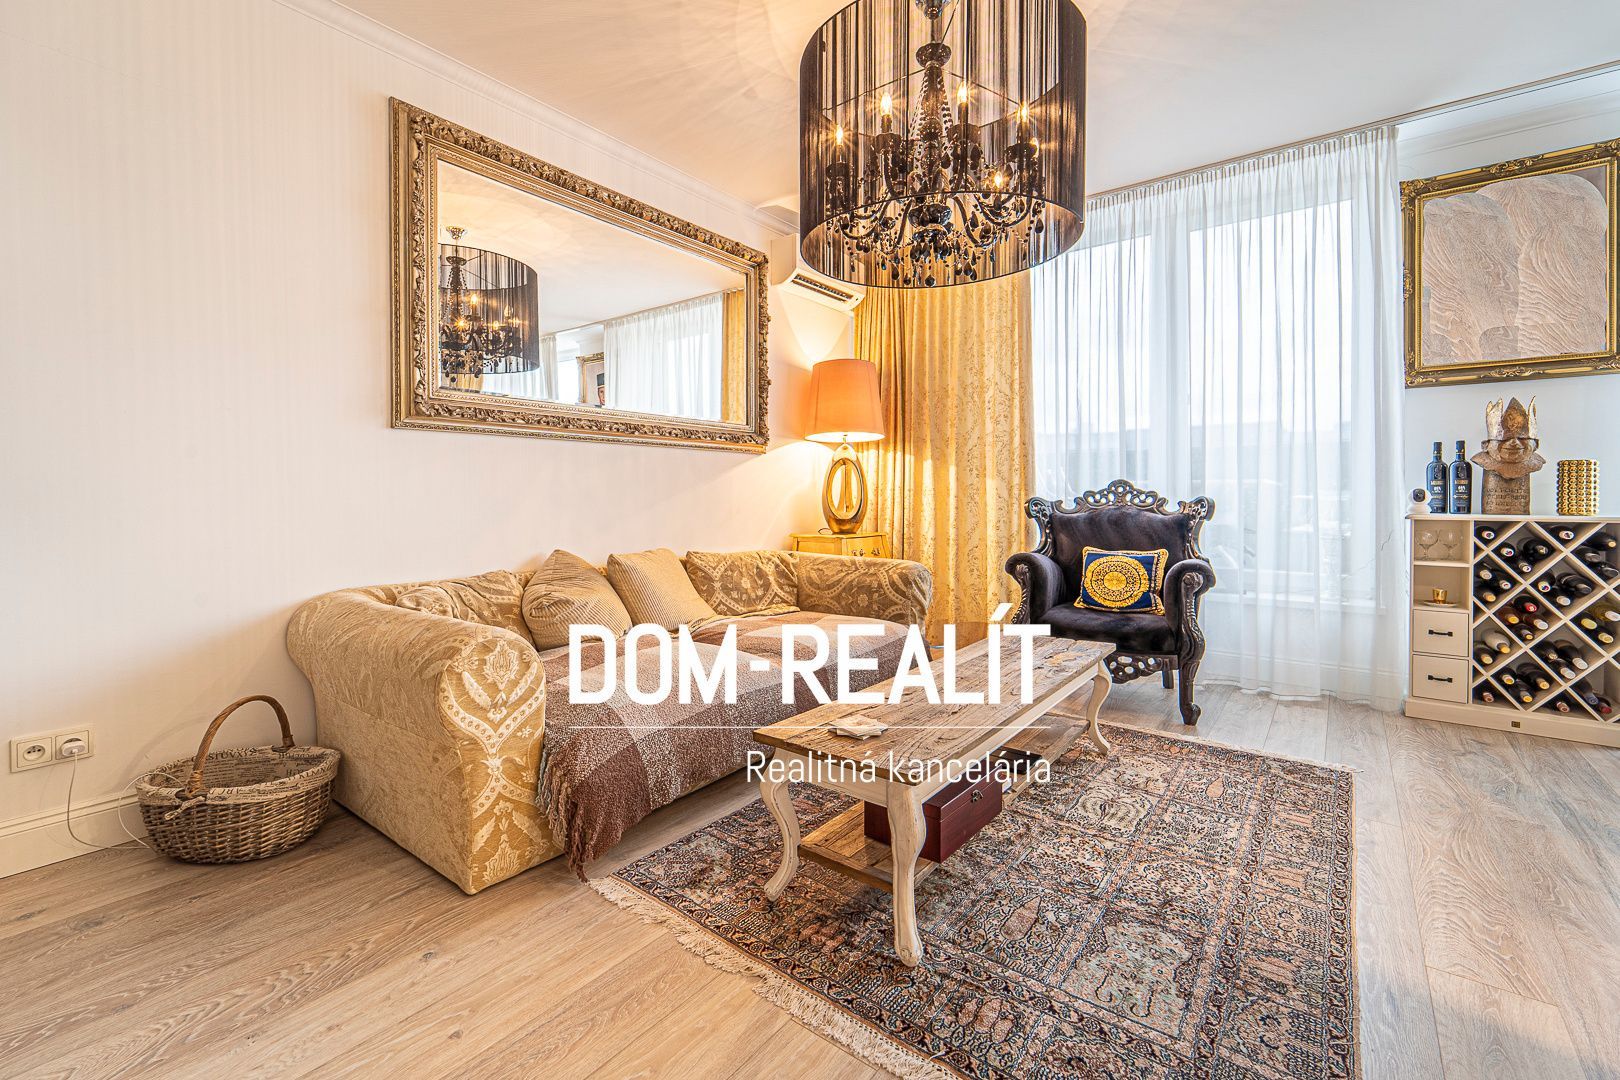 Nehnutelnost DOM-REALÍT vám ponúka 3 izbový byt s priestrannou terasou v Slnečnice - Viladomy, Žltá ulica